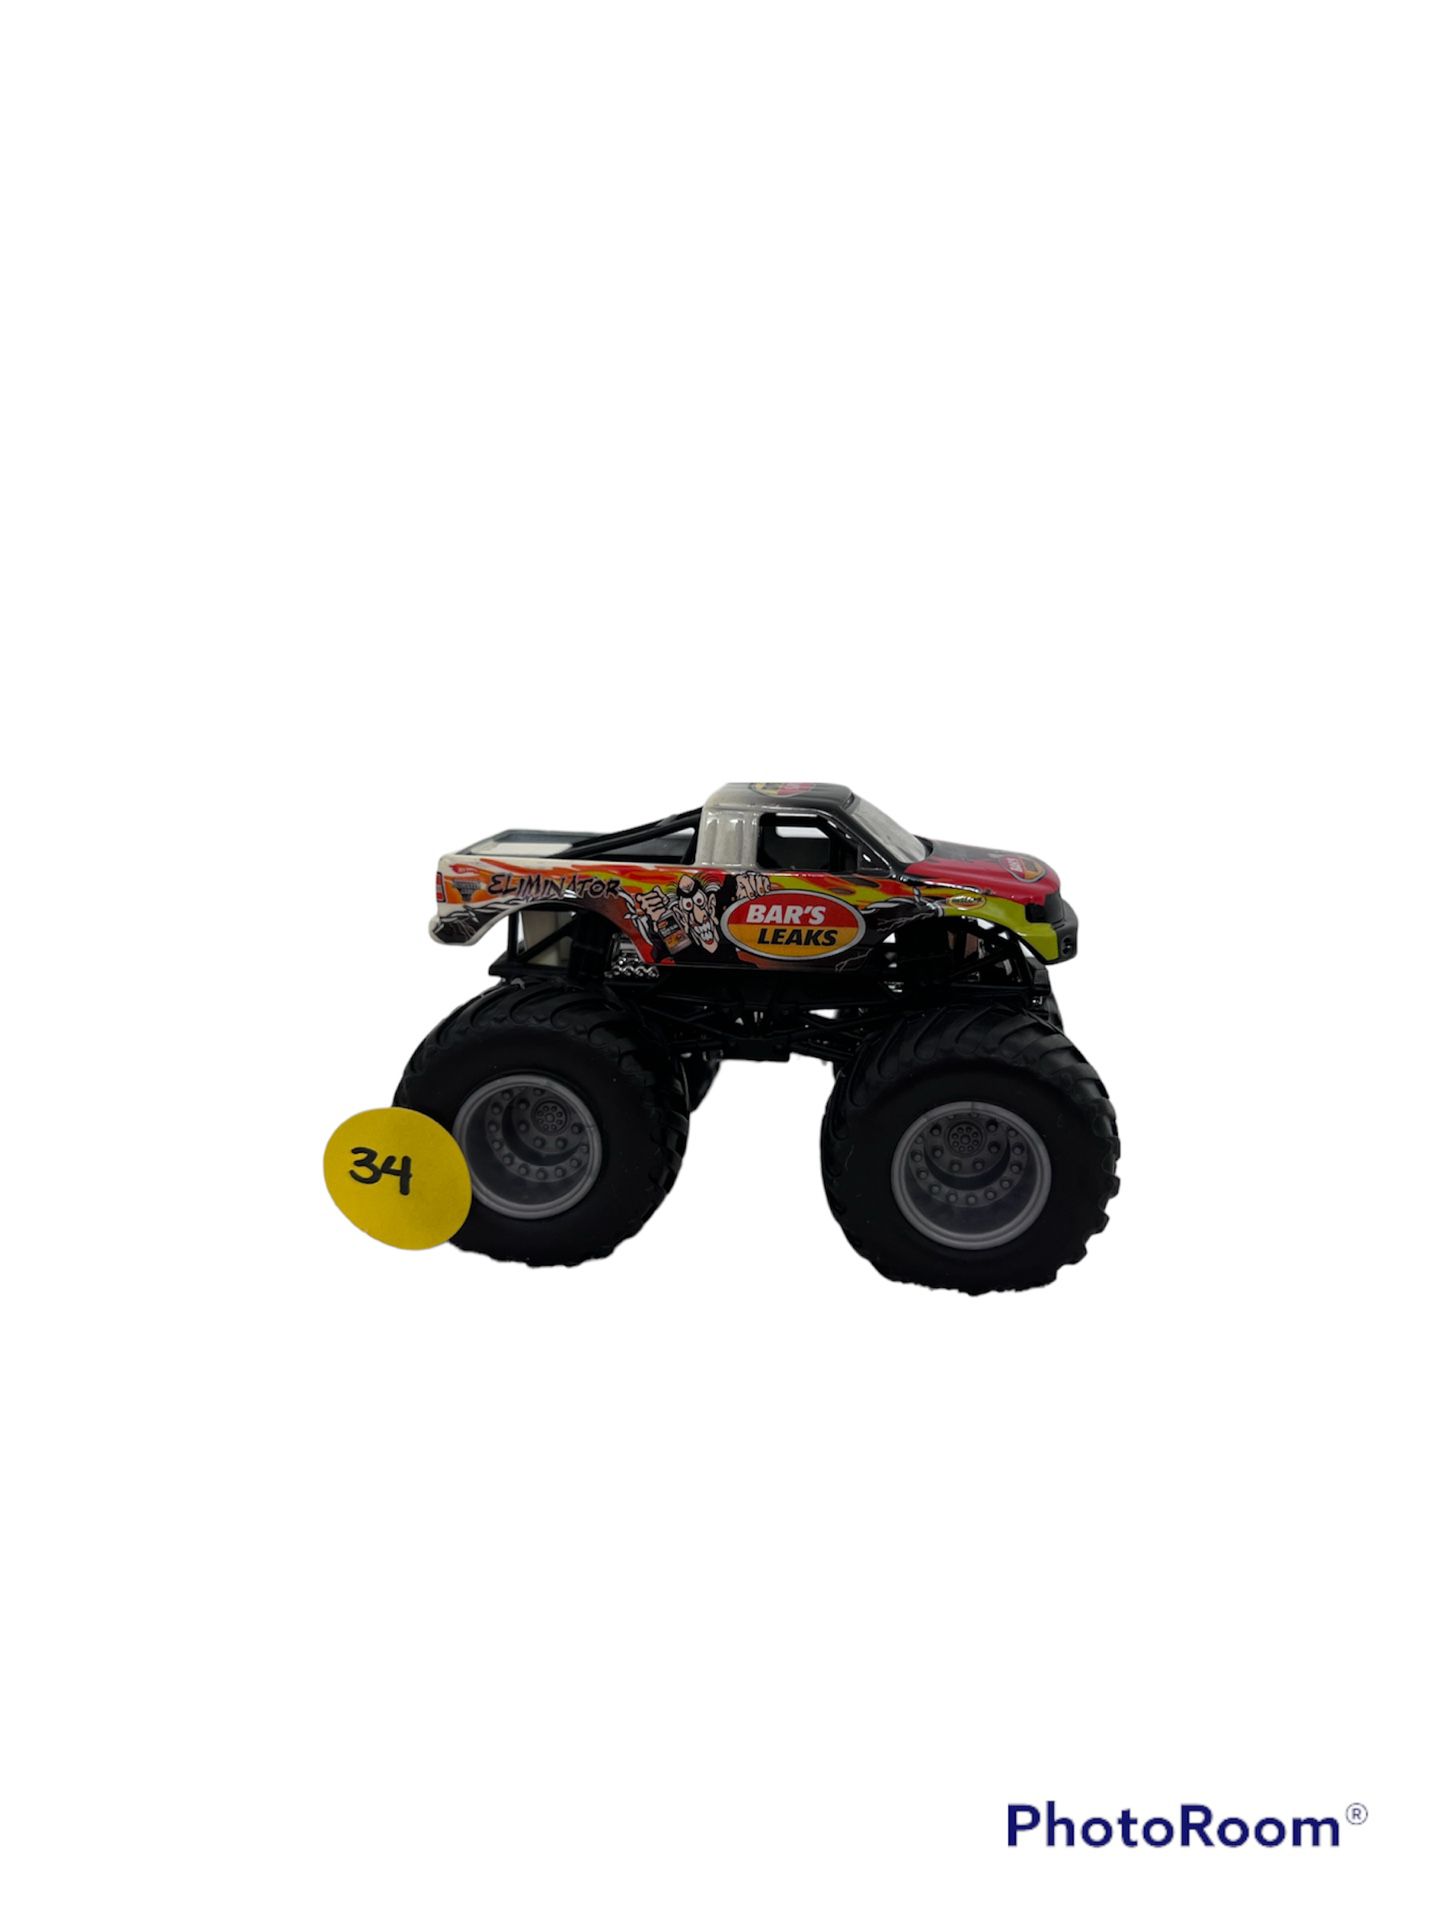 “Eliminator” Hot Wheels Monster Jam Truck 